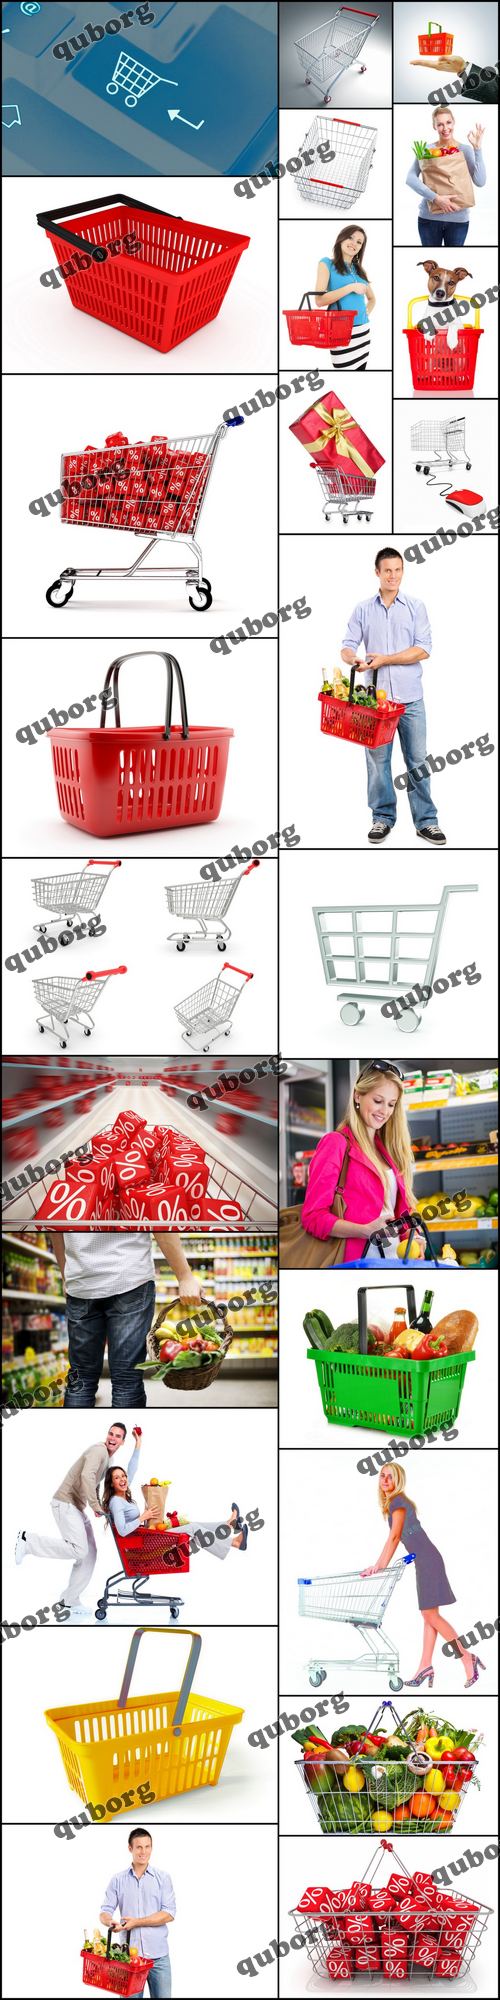 Stock Photos - Shopping Baskets